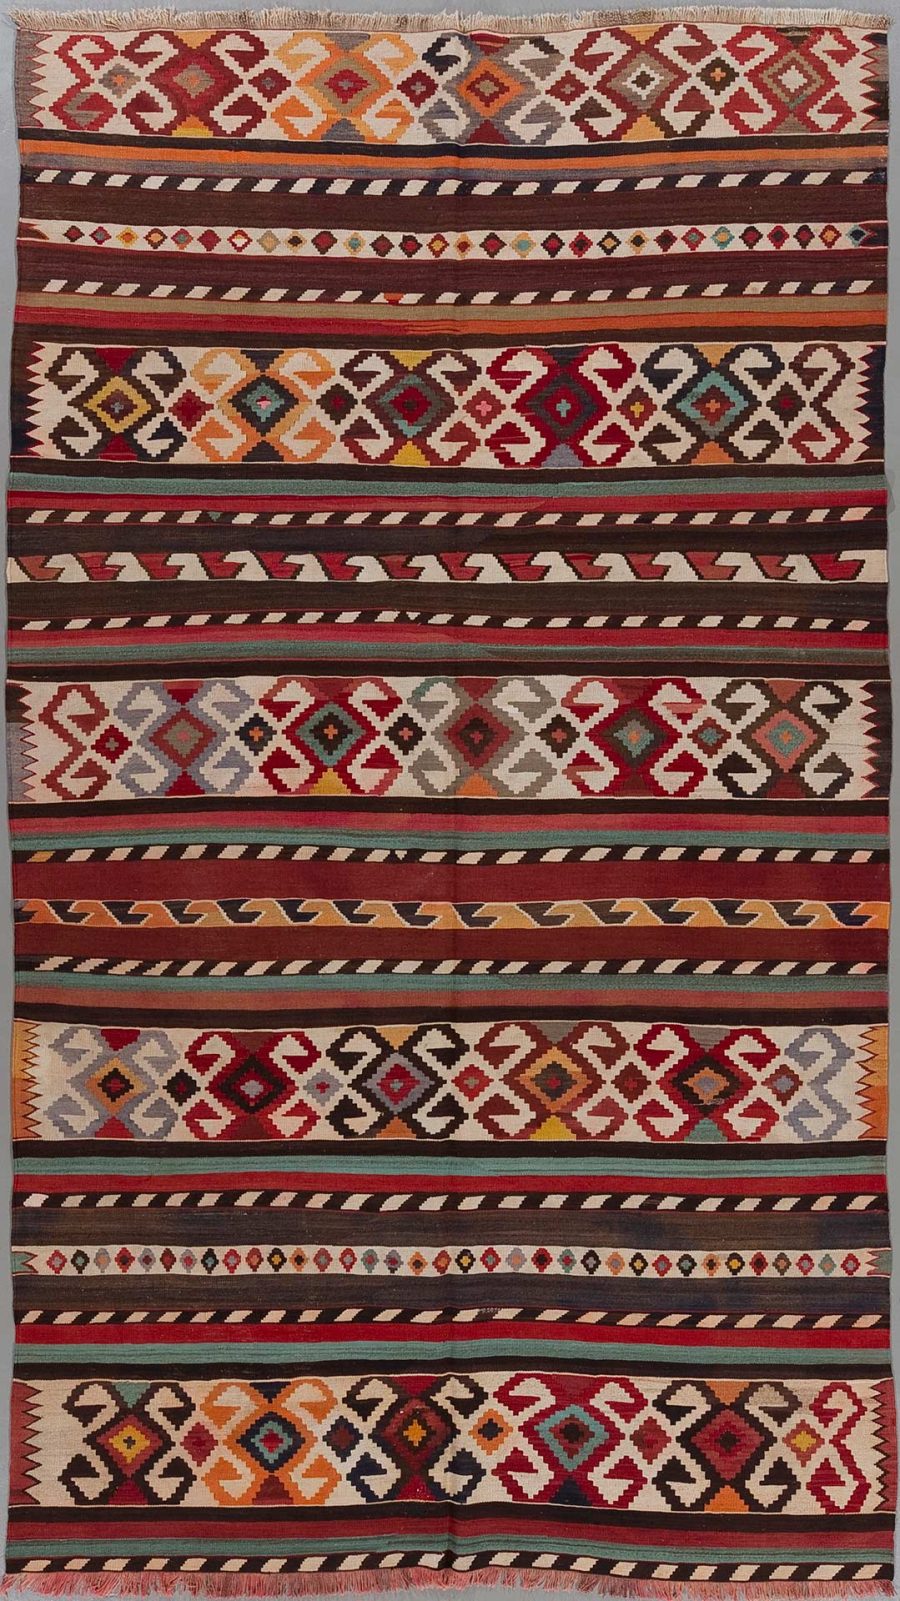 Vertikal ausgerichteter, handgewebter Teppich mit traditionellen ethnischen Mustern in einer Vielfalt an Farben, darunter Rot, Braun, Orange, Weiß und Schwarz, angeordnet in wiederkehrenden geometrischen Formen und Streifen.